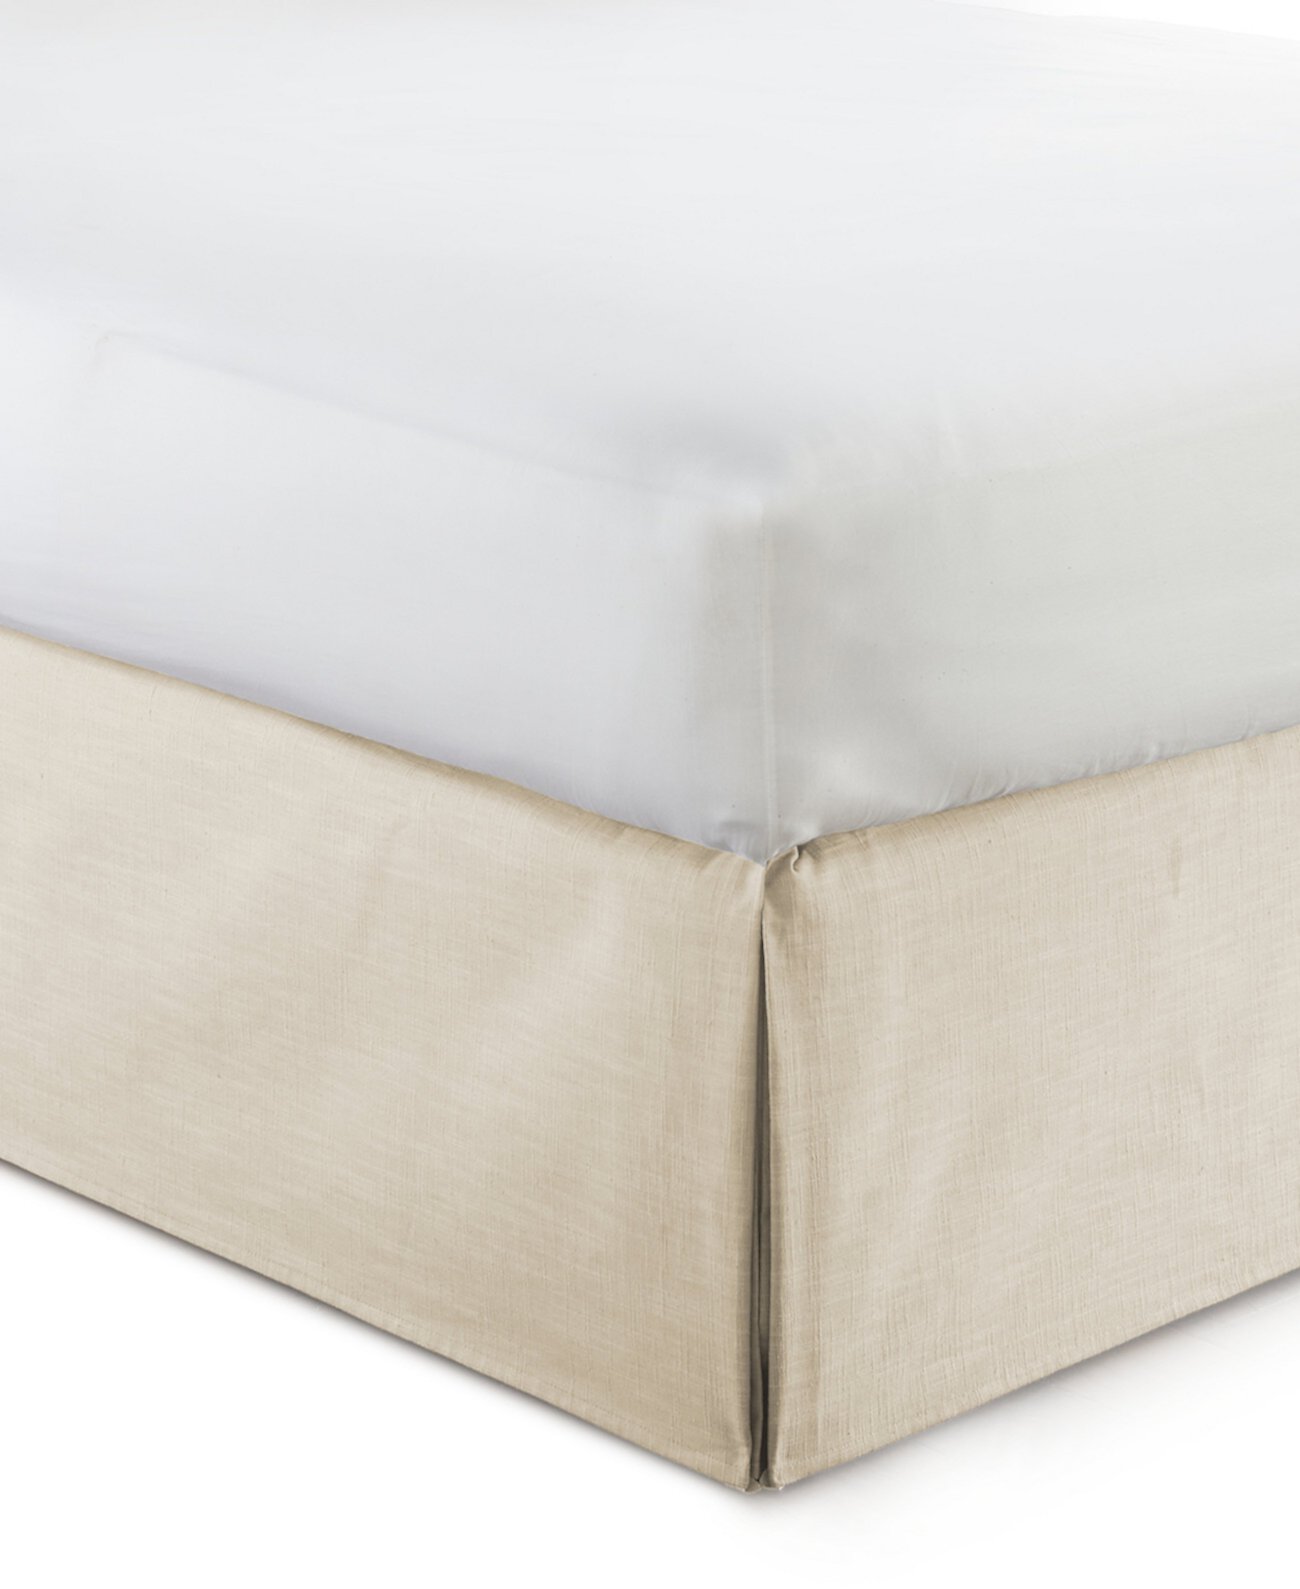 Юбка-кровать Cambric Vanilla 15 дюймов - King Colcha Linens